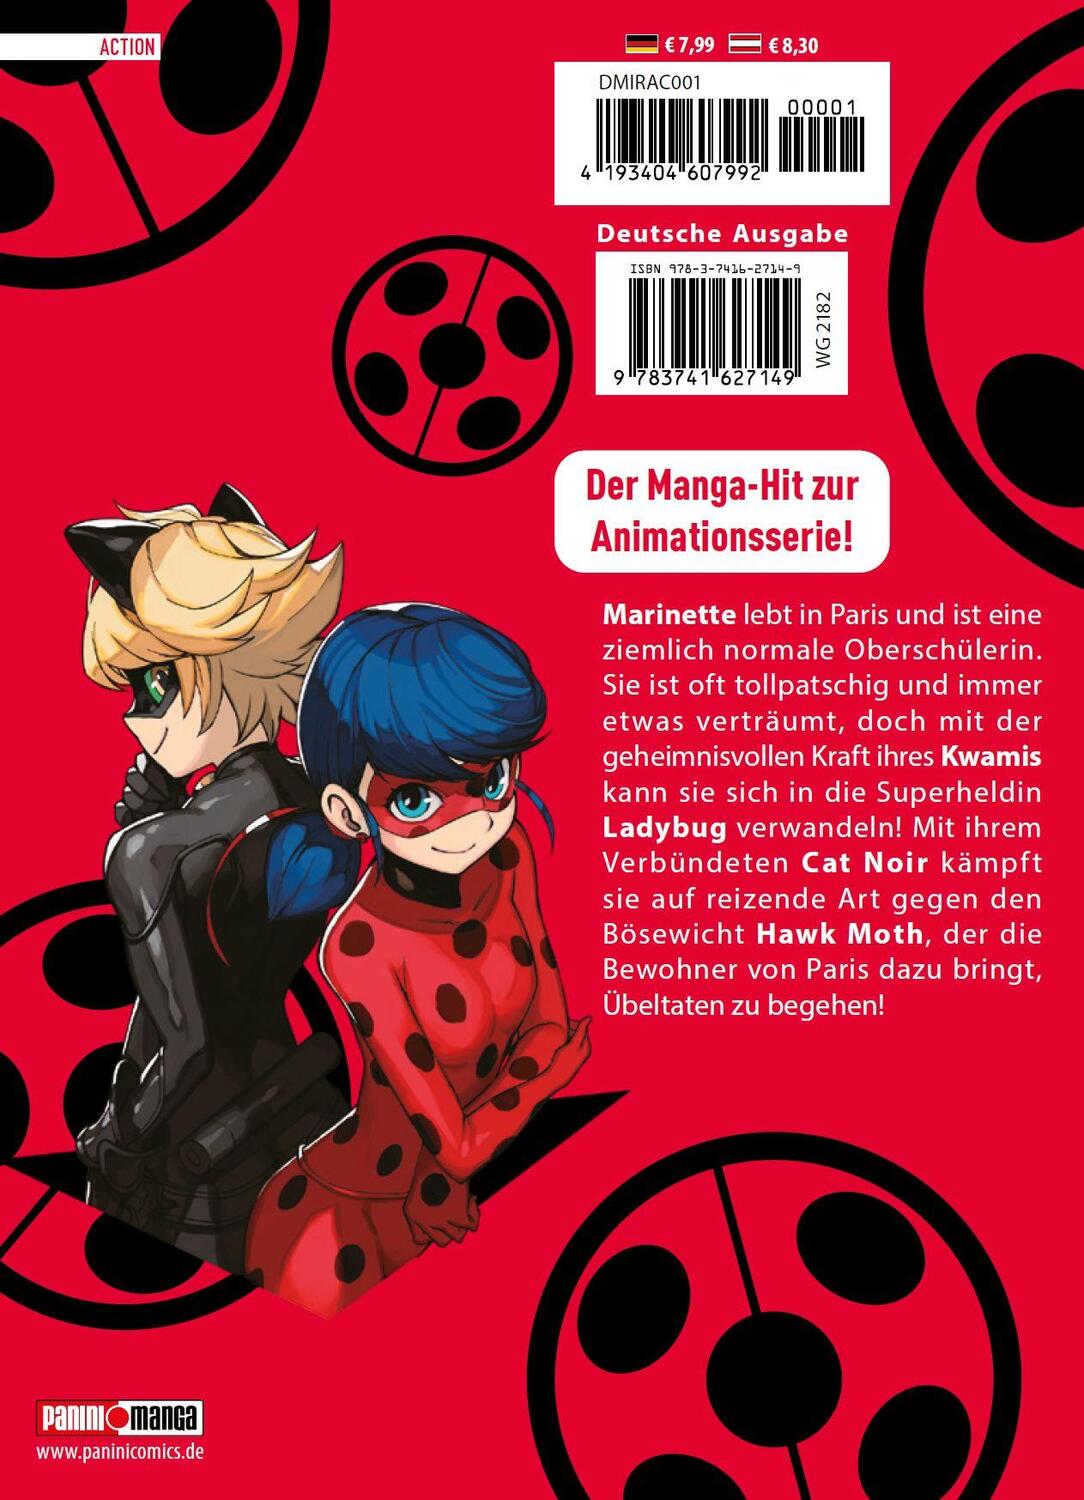 Rückseite: 9783741627149 | Miraculous - Die Abenteuer von Ladybug und Cat Noir (Manga) 01 | Bd. 1